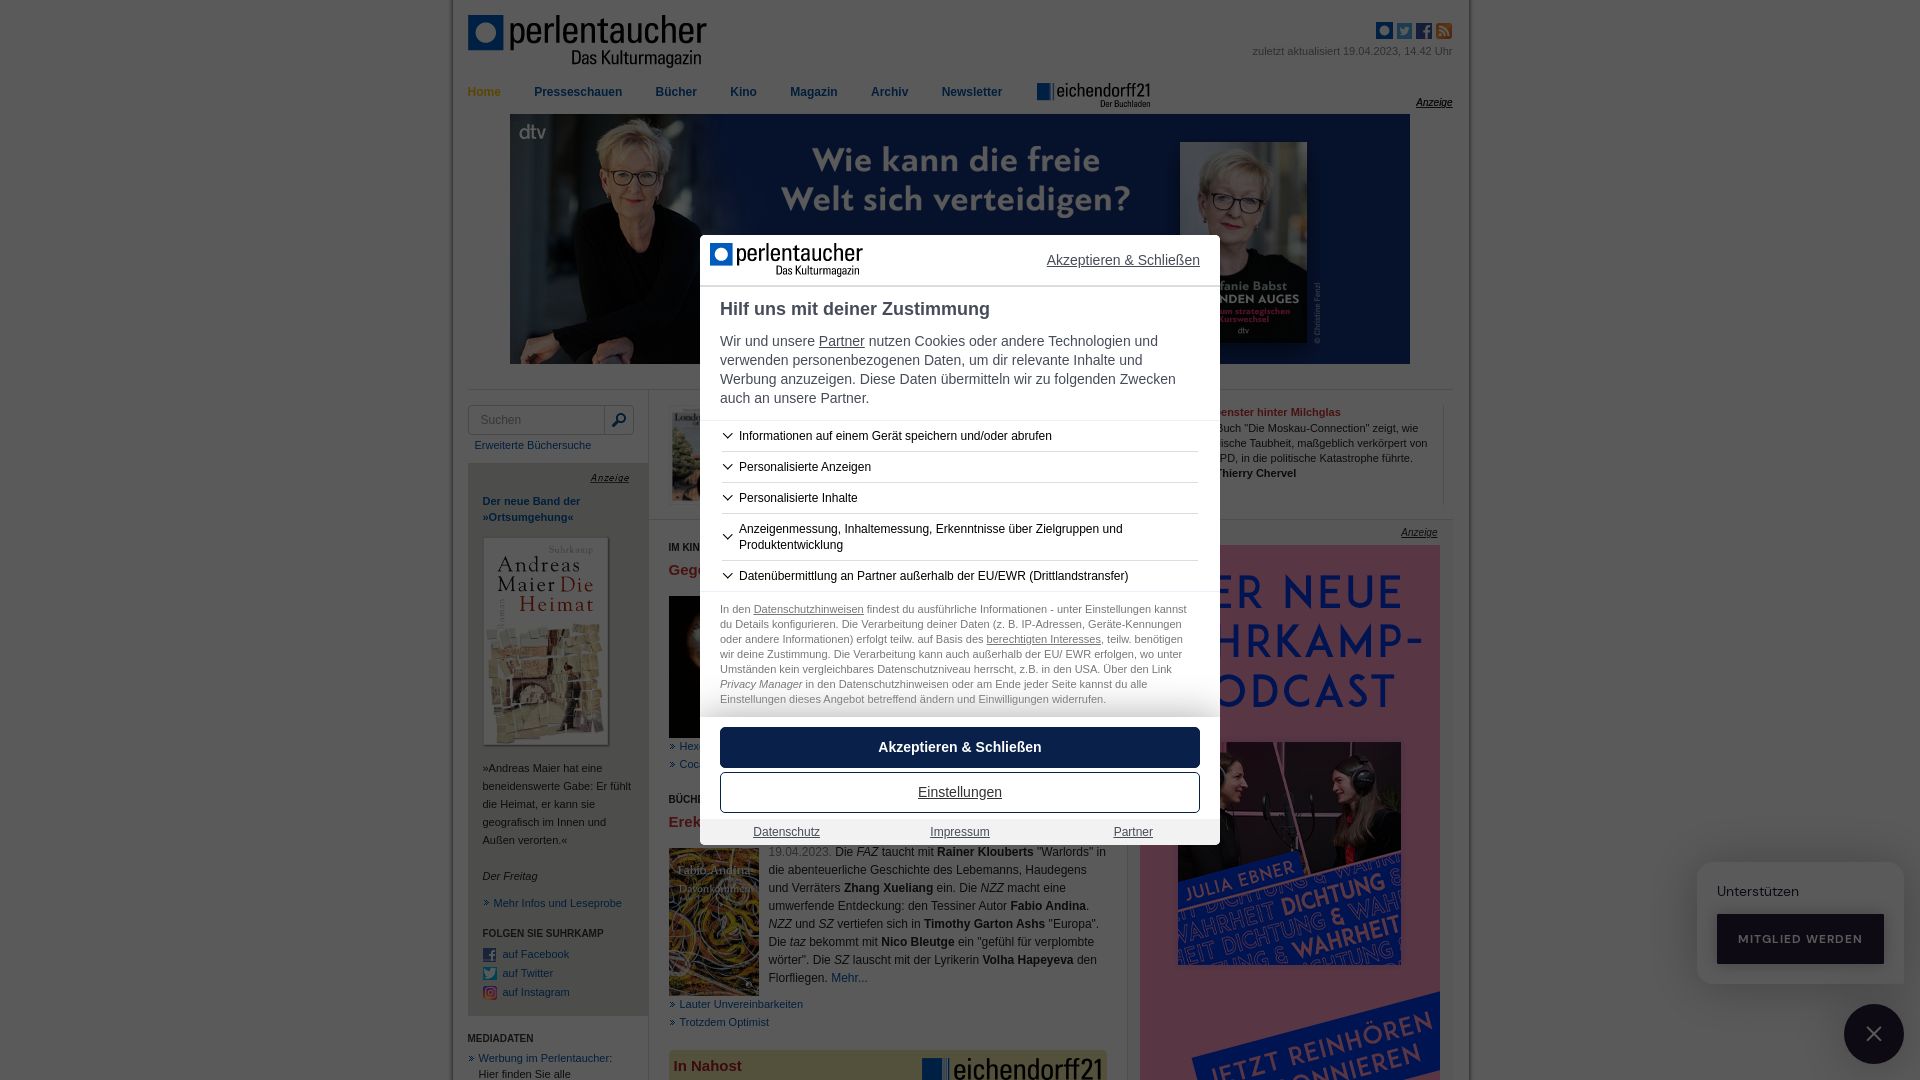 Website status perlentaucher.de is   ONLINE